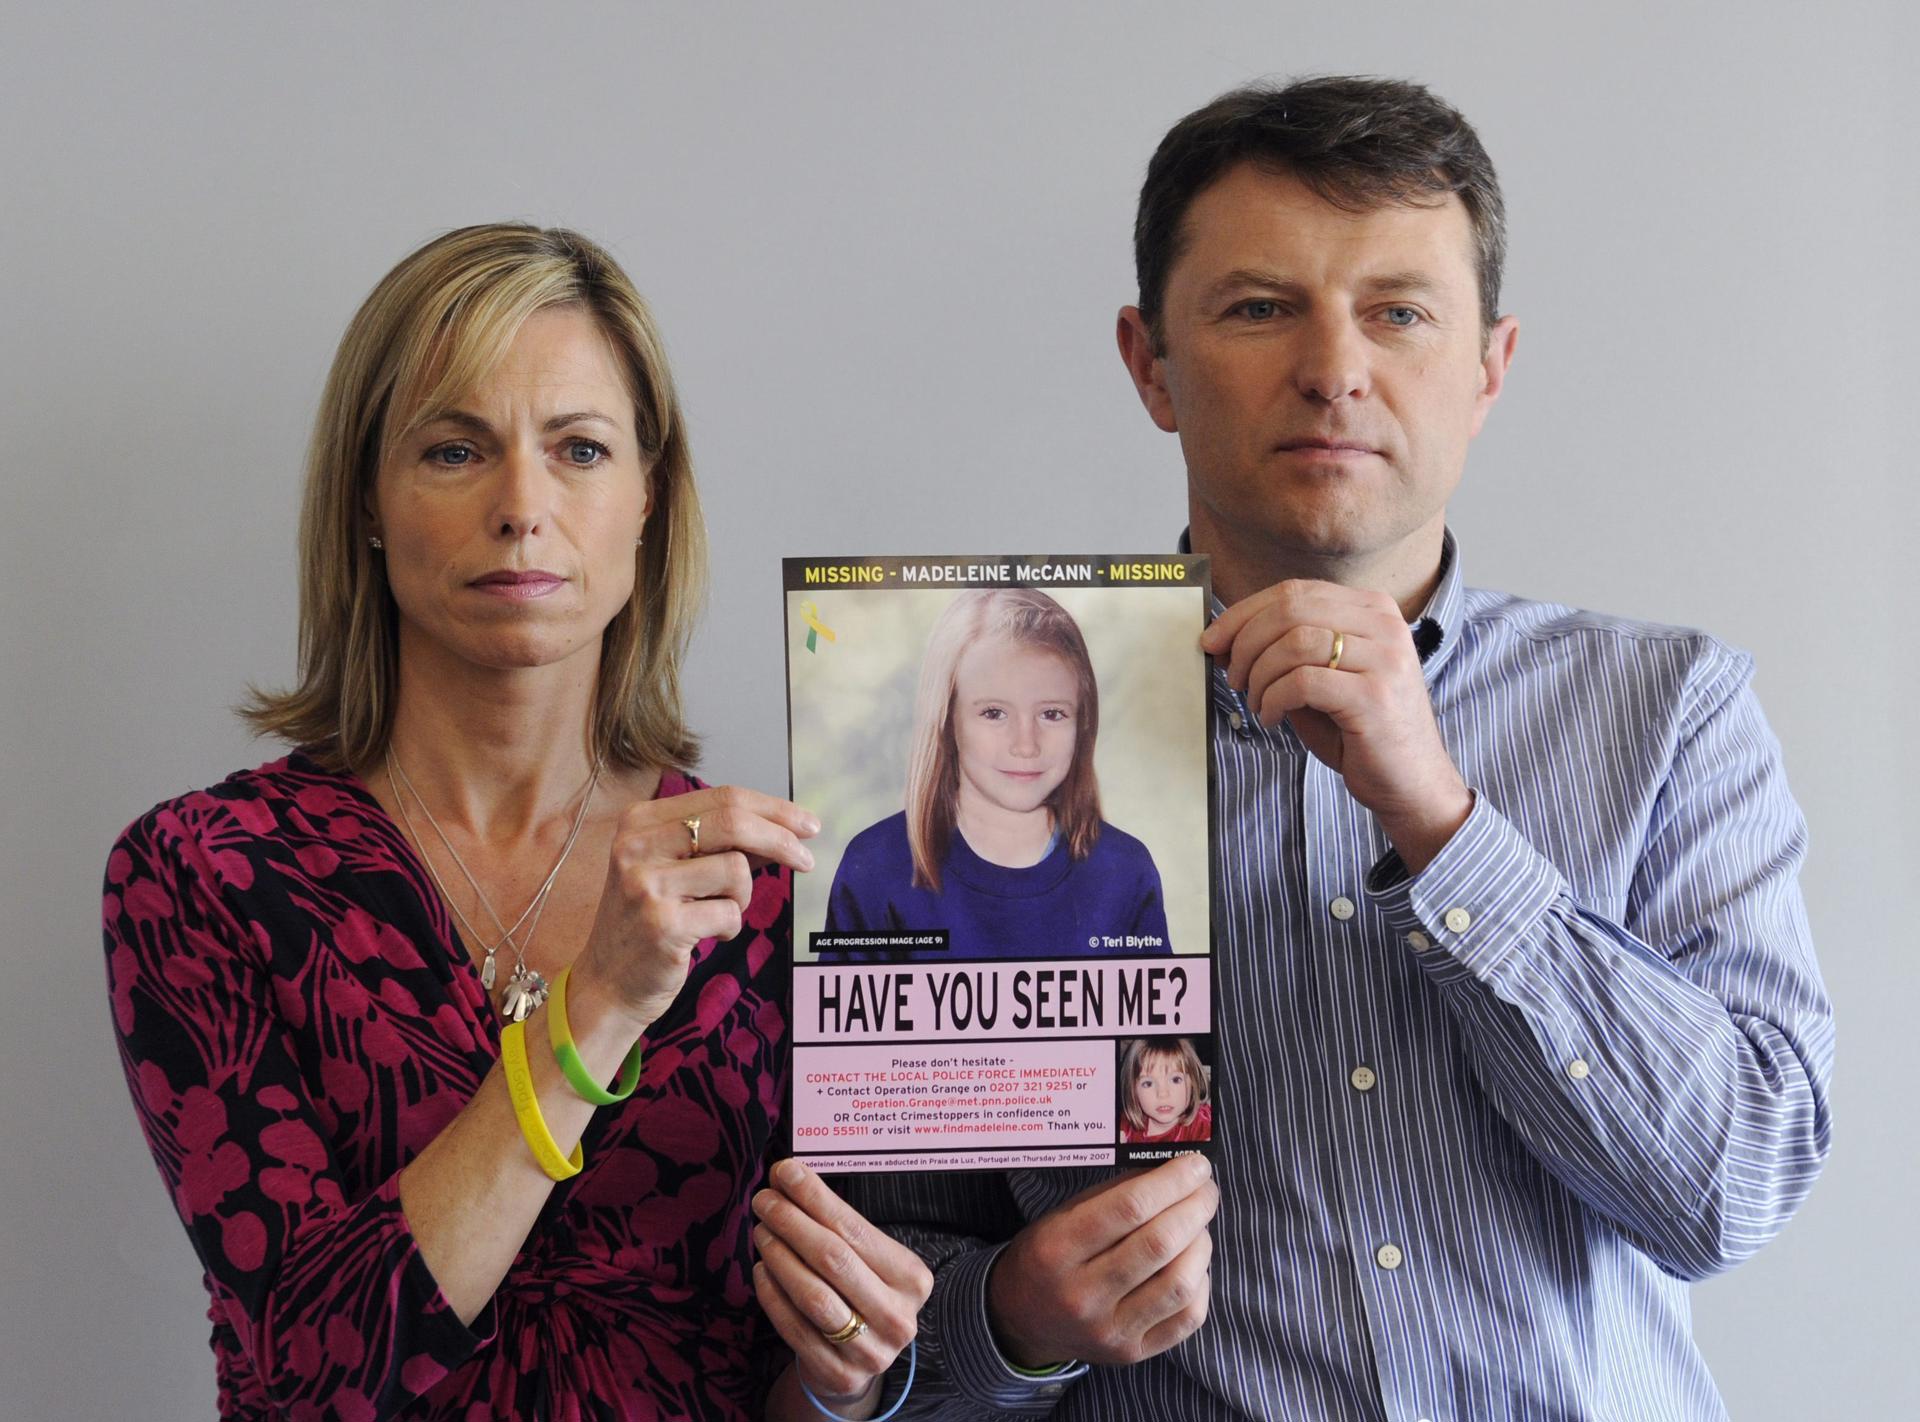 Fotografía de archivo del 2 de mayo de 2012 que muestra a Kate McCann y su marido, Gerry McCann, sujetando un cartel con una fotografía de su hija desparecida en 2007, Madeleine McCann.